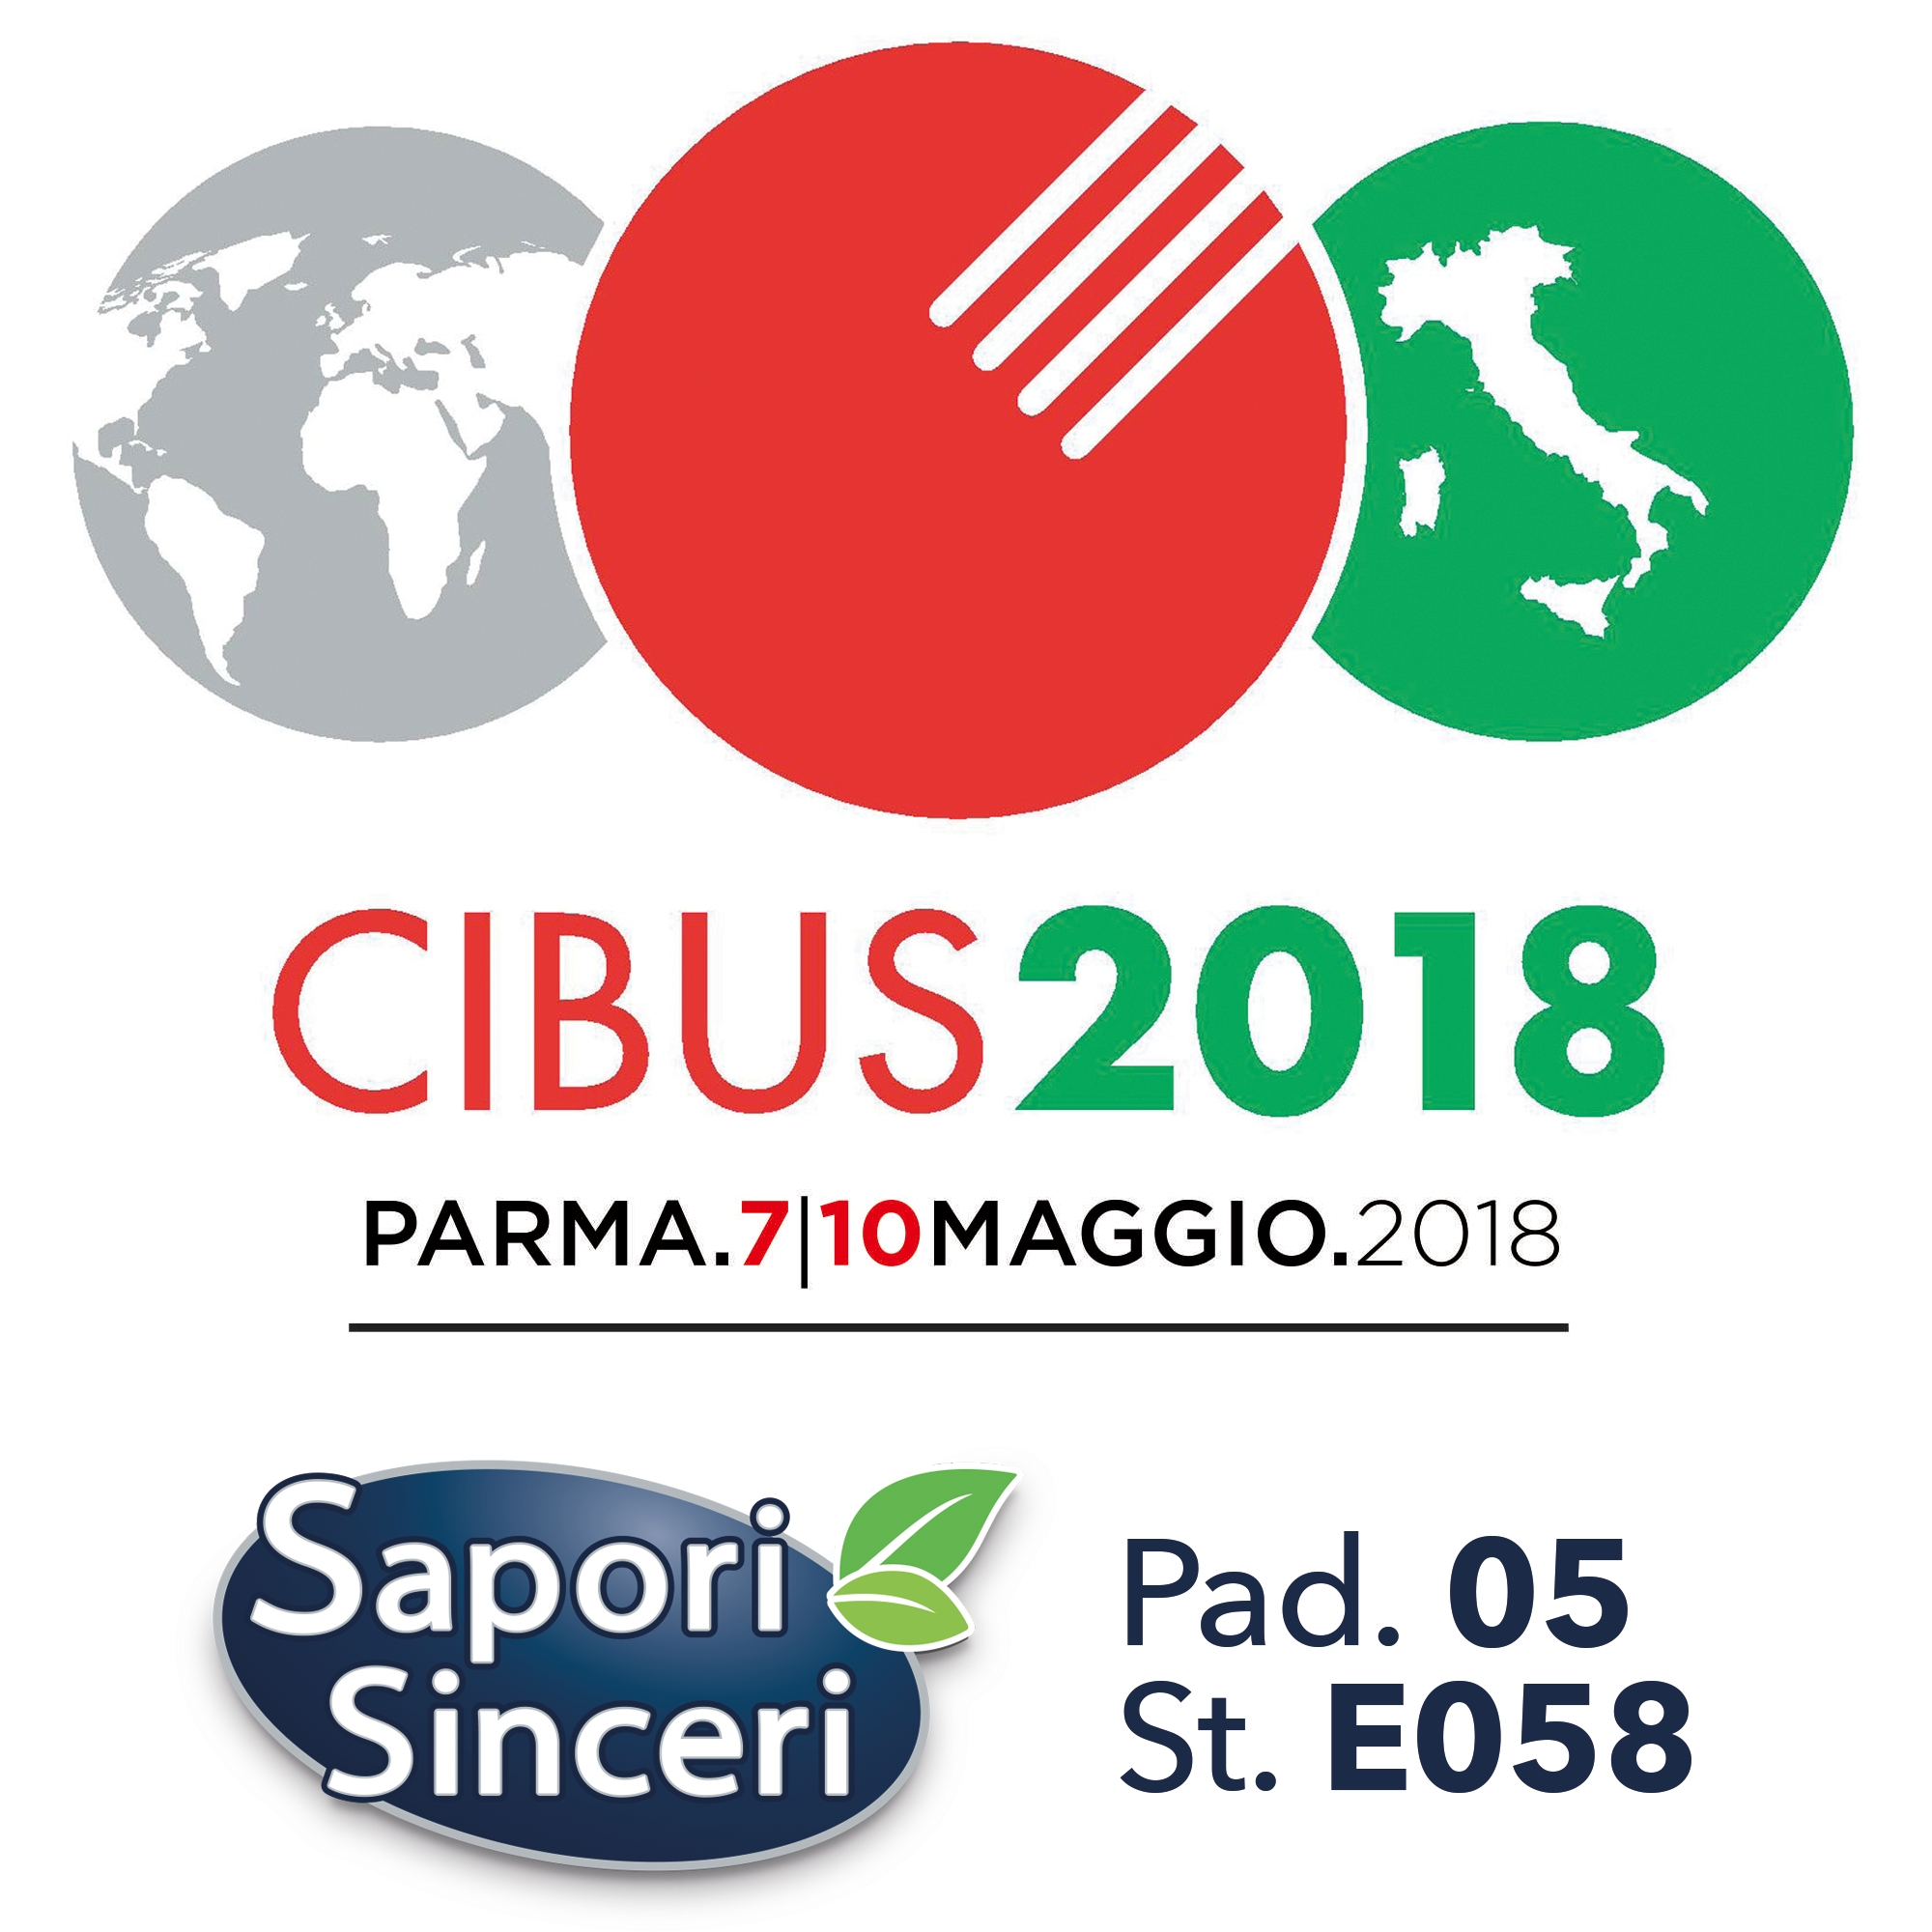 Sapori Sinceri dal 7 al 10 maggio a Parma per Cibus 2018